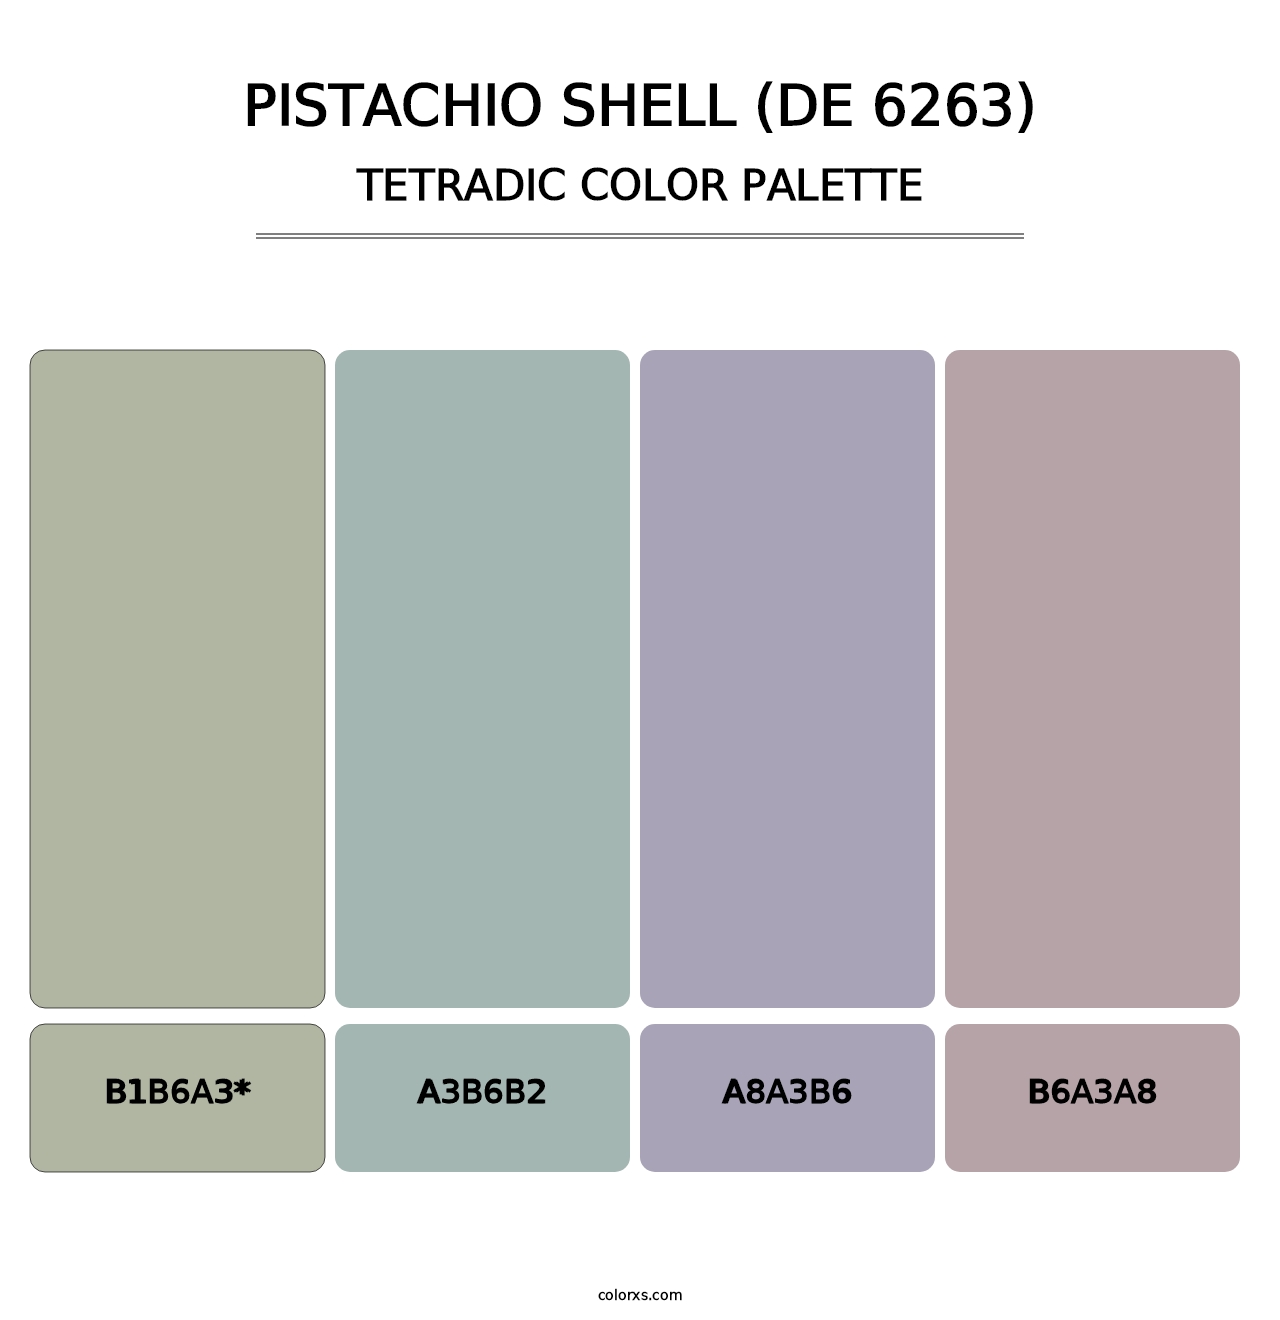 Pistachio Shell (DE 6263) - Tetradic Color Palette